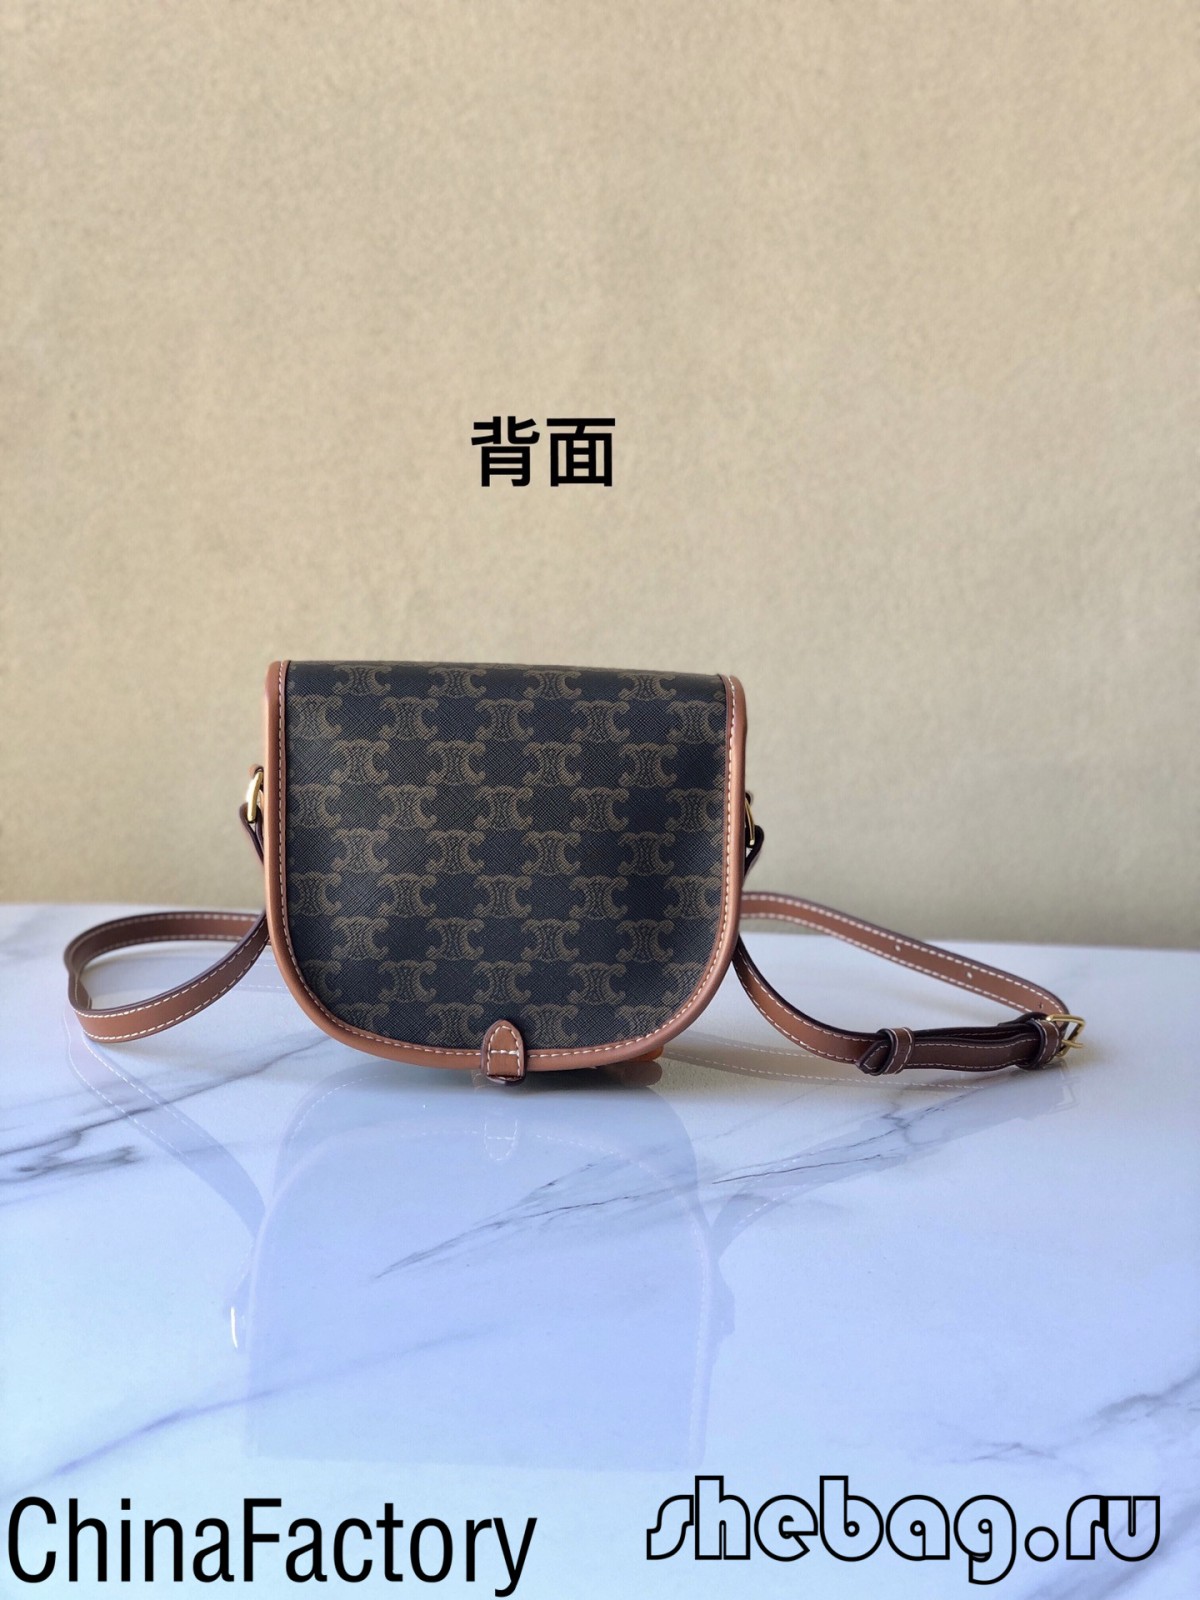 Најдобар продавач на реплики на торбички со celine појас во Кина: Celine Folco (ажурирано во 2022 година) - Онлајн продавница за лажни торби од Луј Витон со најдобар квалитет, дизајнерска торба со реплика ru